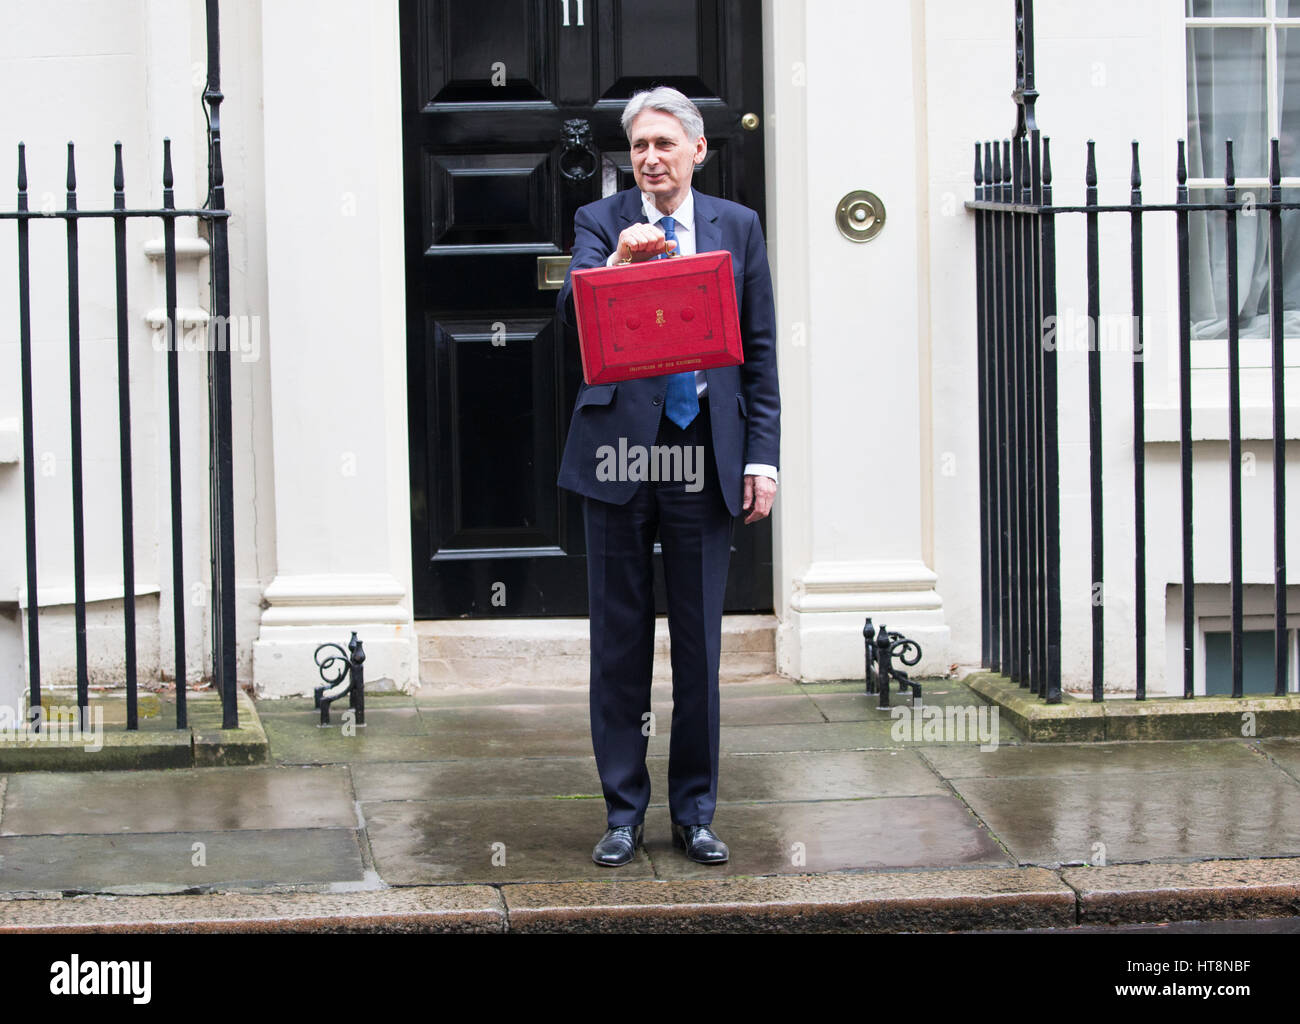 Herr Bundeskanzler, steht Philip Hammond auf der Stufe 11 Downing Street hält den berühmten roten Kasten vor der Auslieferung sein Budgets an das Parlament Stockfoto